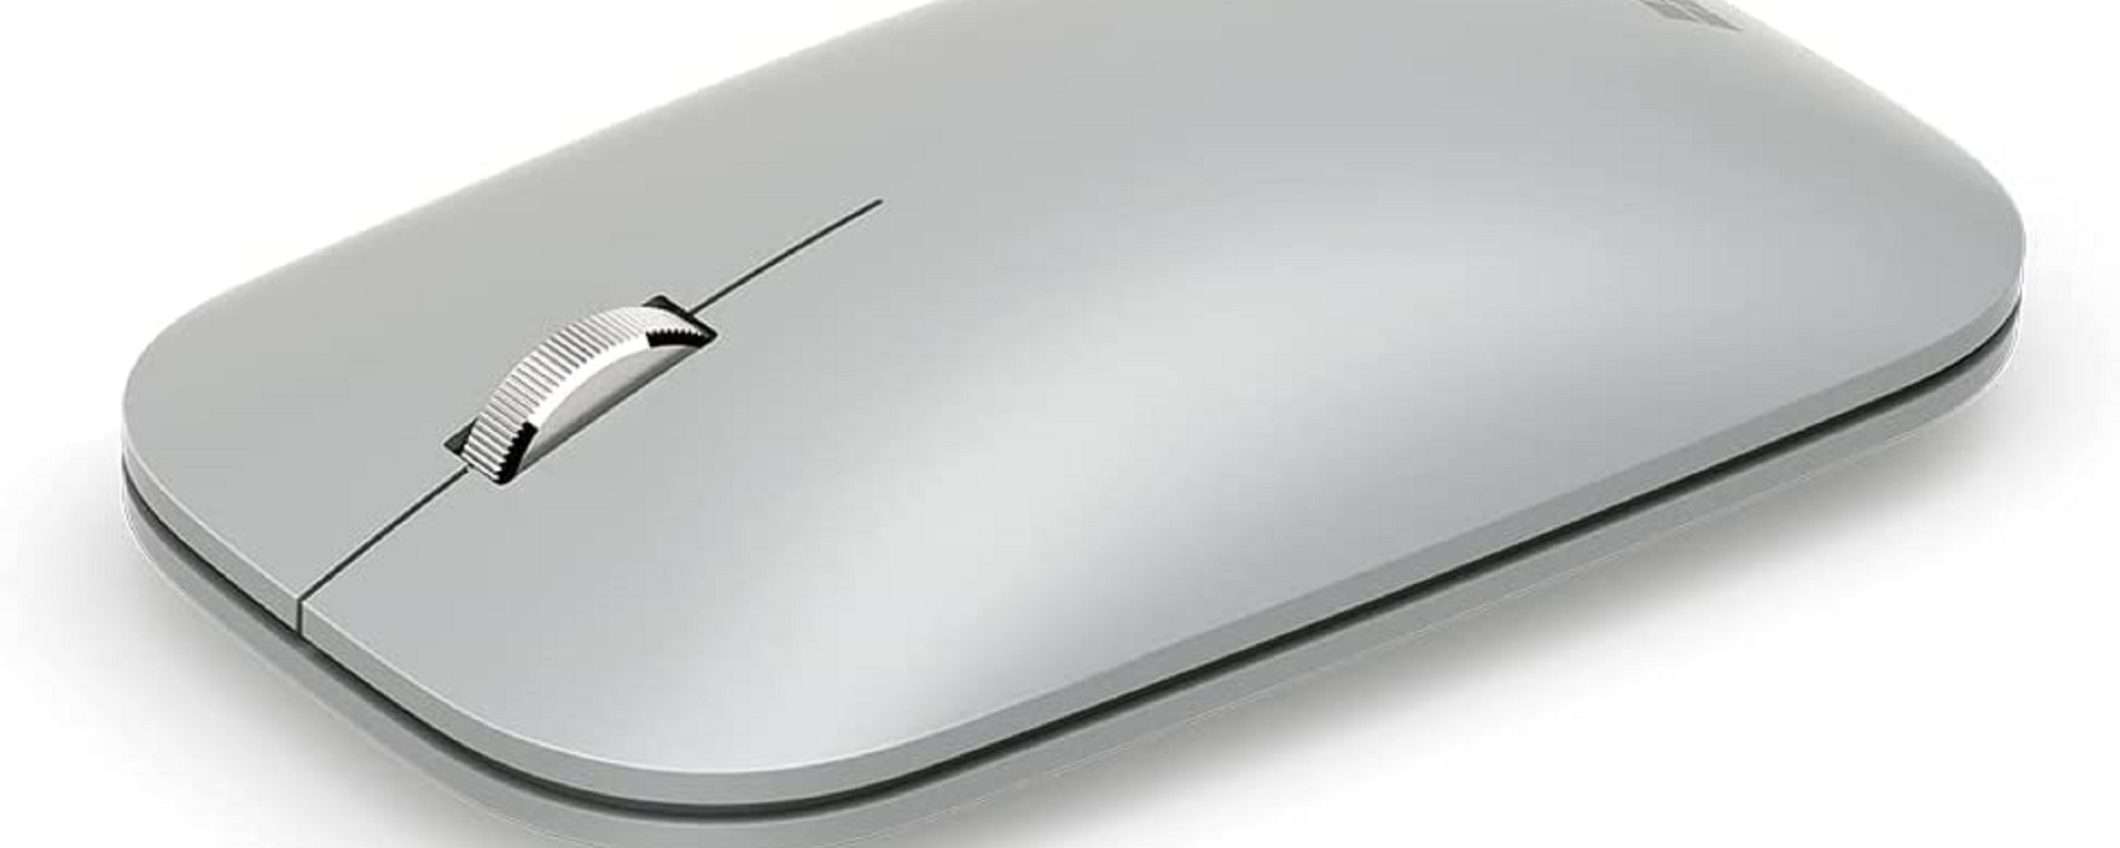 Microsoft Surface Mouse: eleganza e funzionalità a un prezzo SUPER